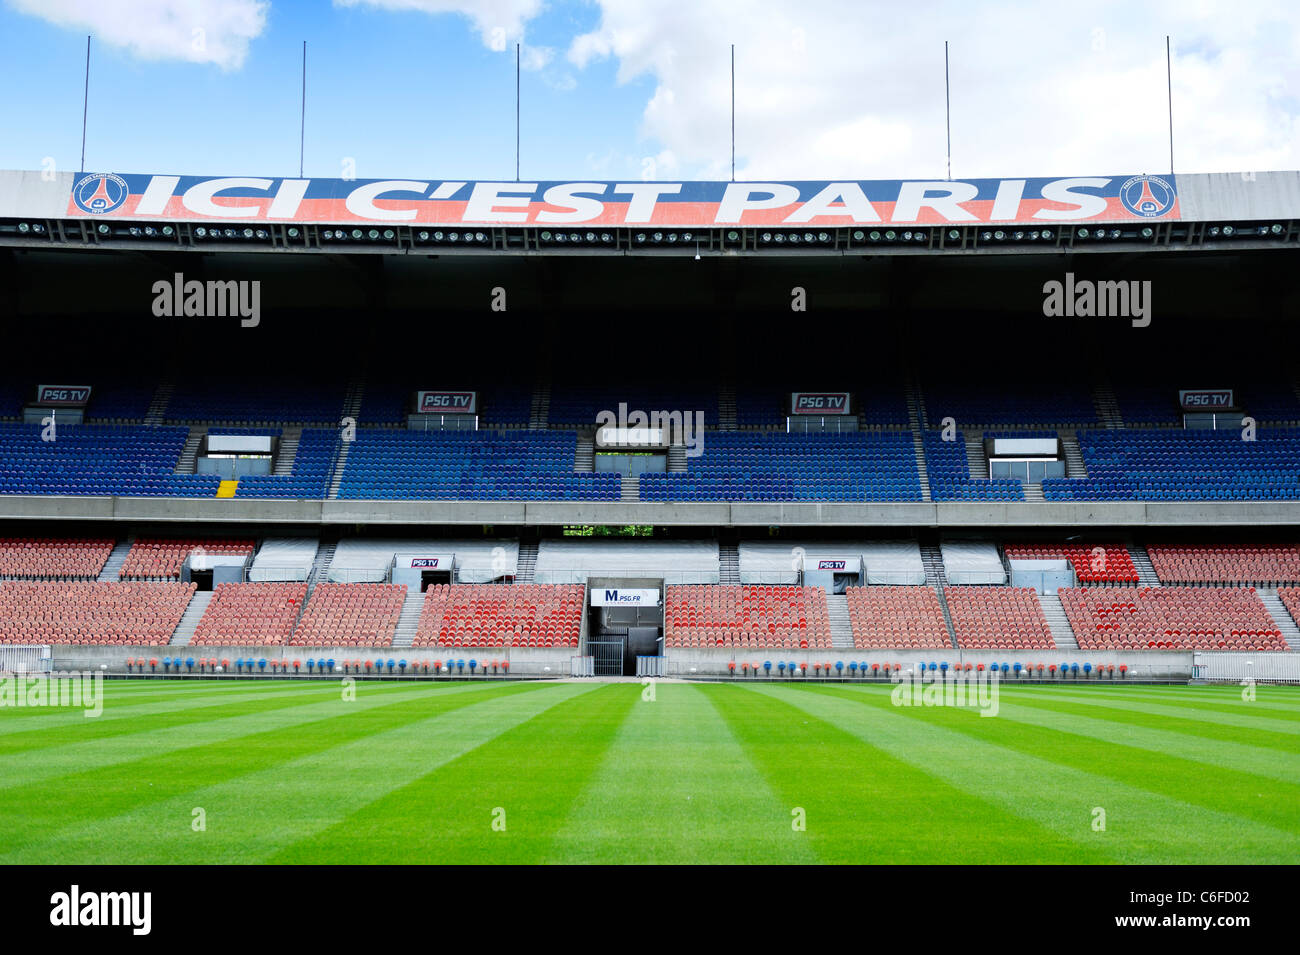 The grandstand at Paris St Germain club stadium Parc Des Princes in Paris, France. Stock Photo